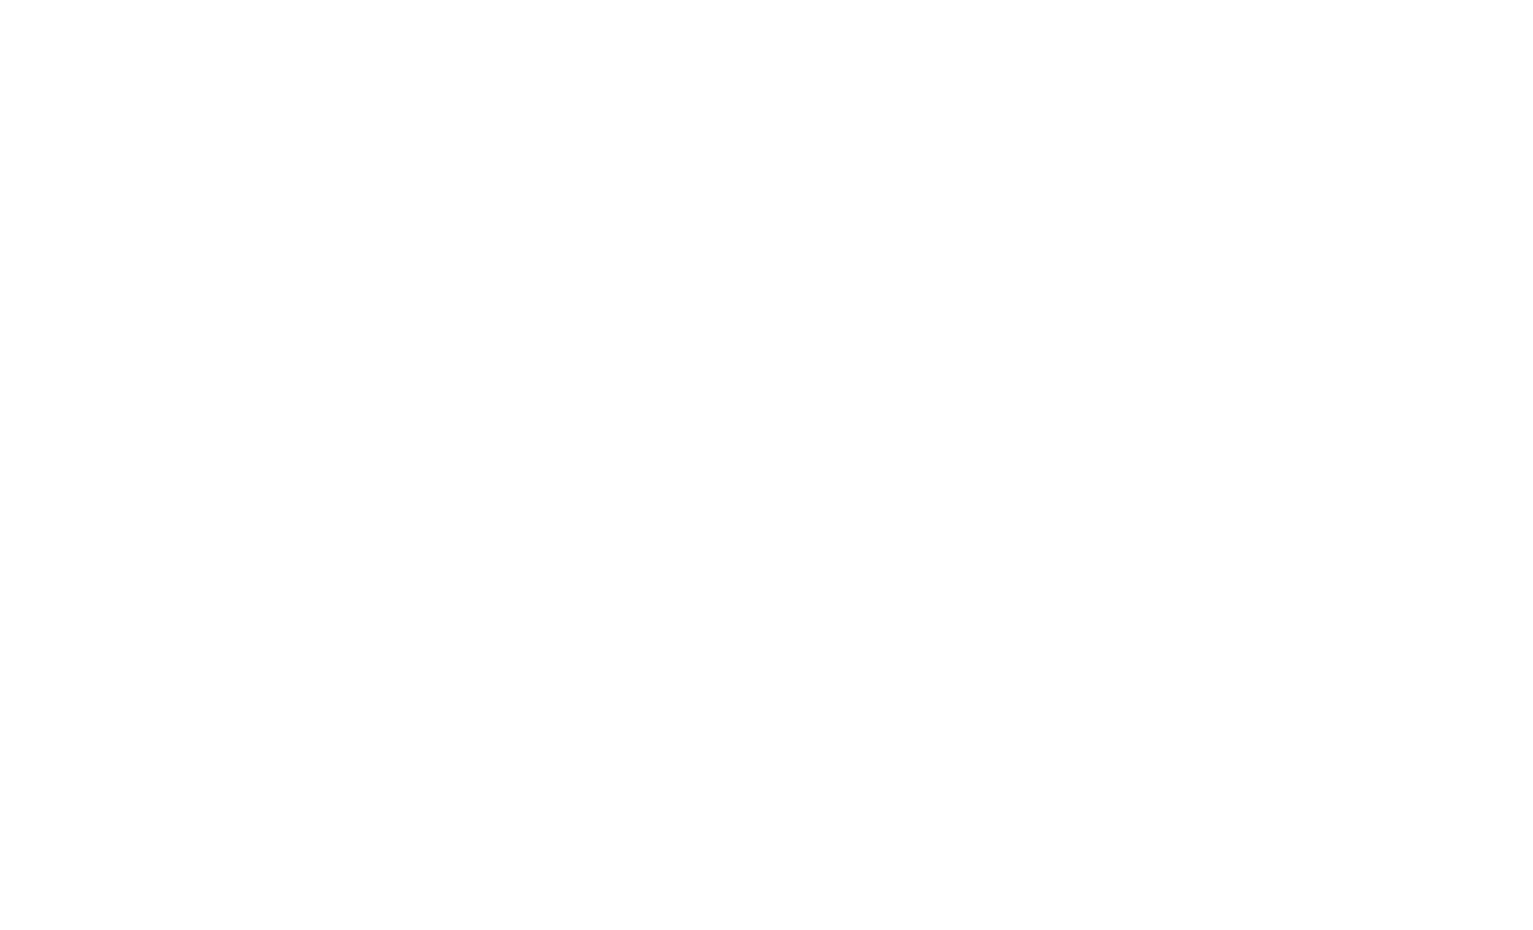 Grifols logo for dark backgrounds (transparent PNG)